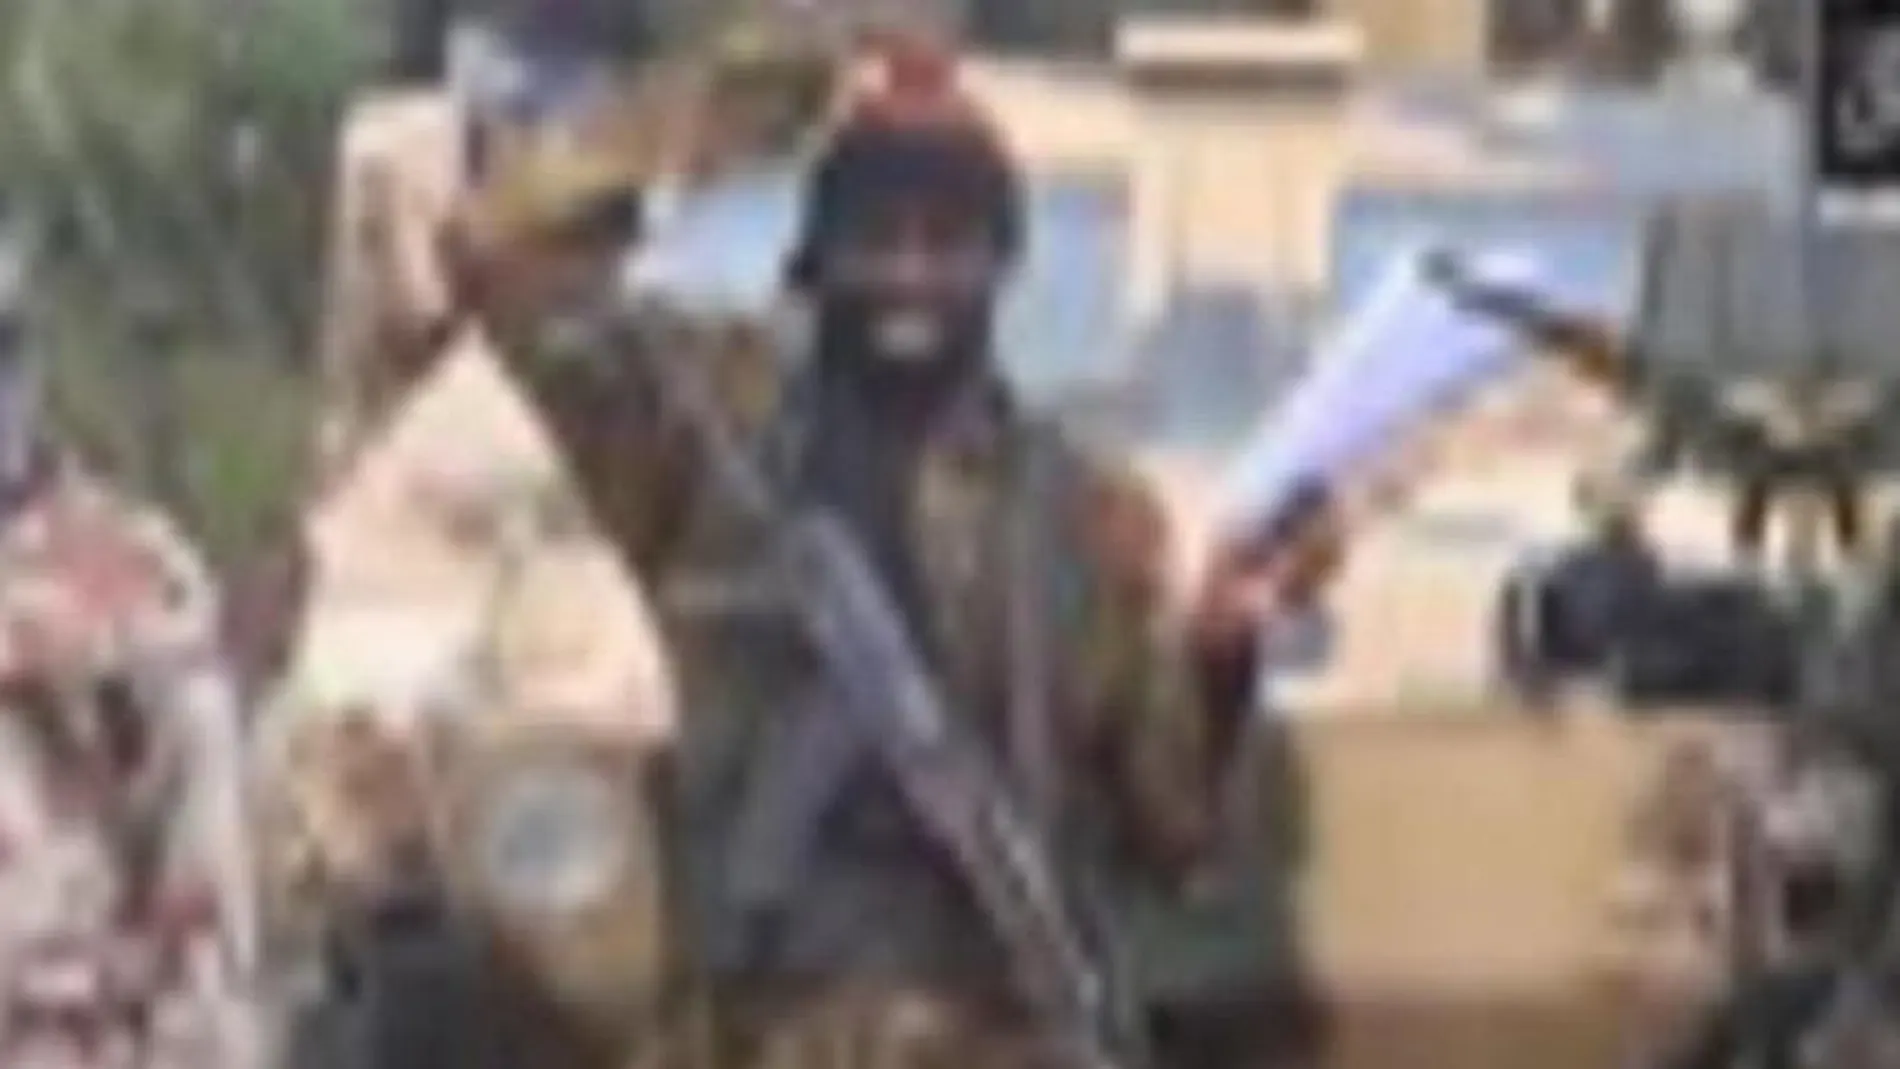 El líder de Boko Haram, Abubakar Shekau